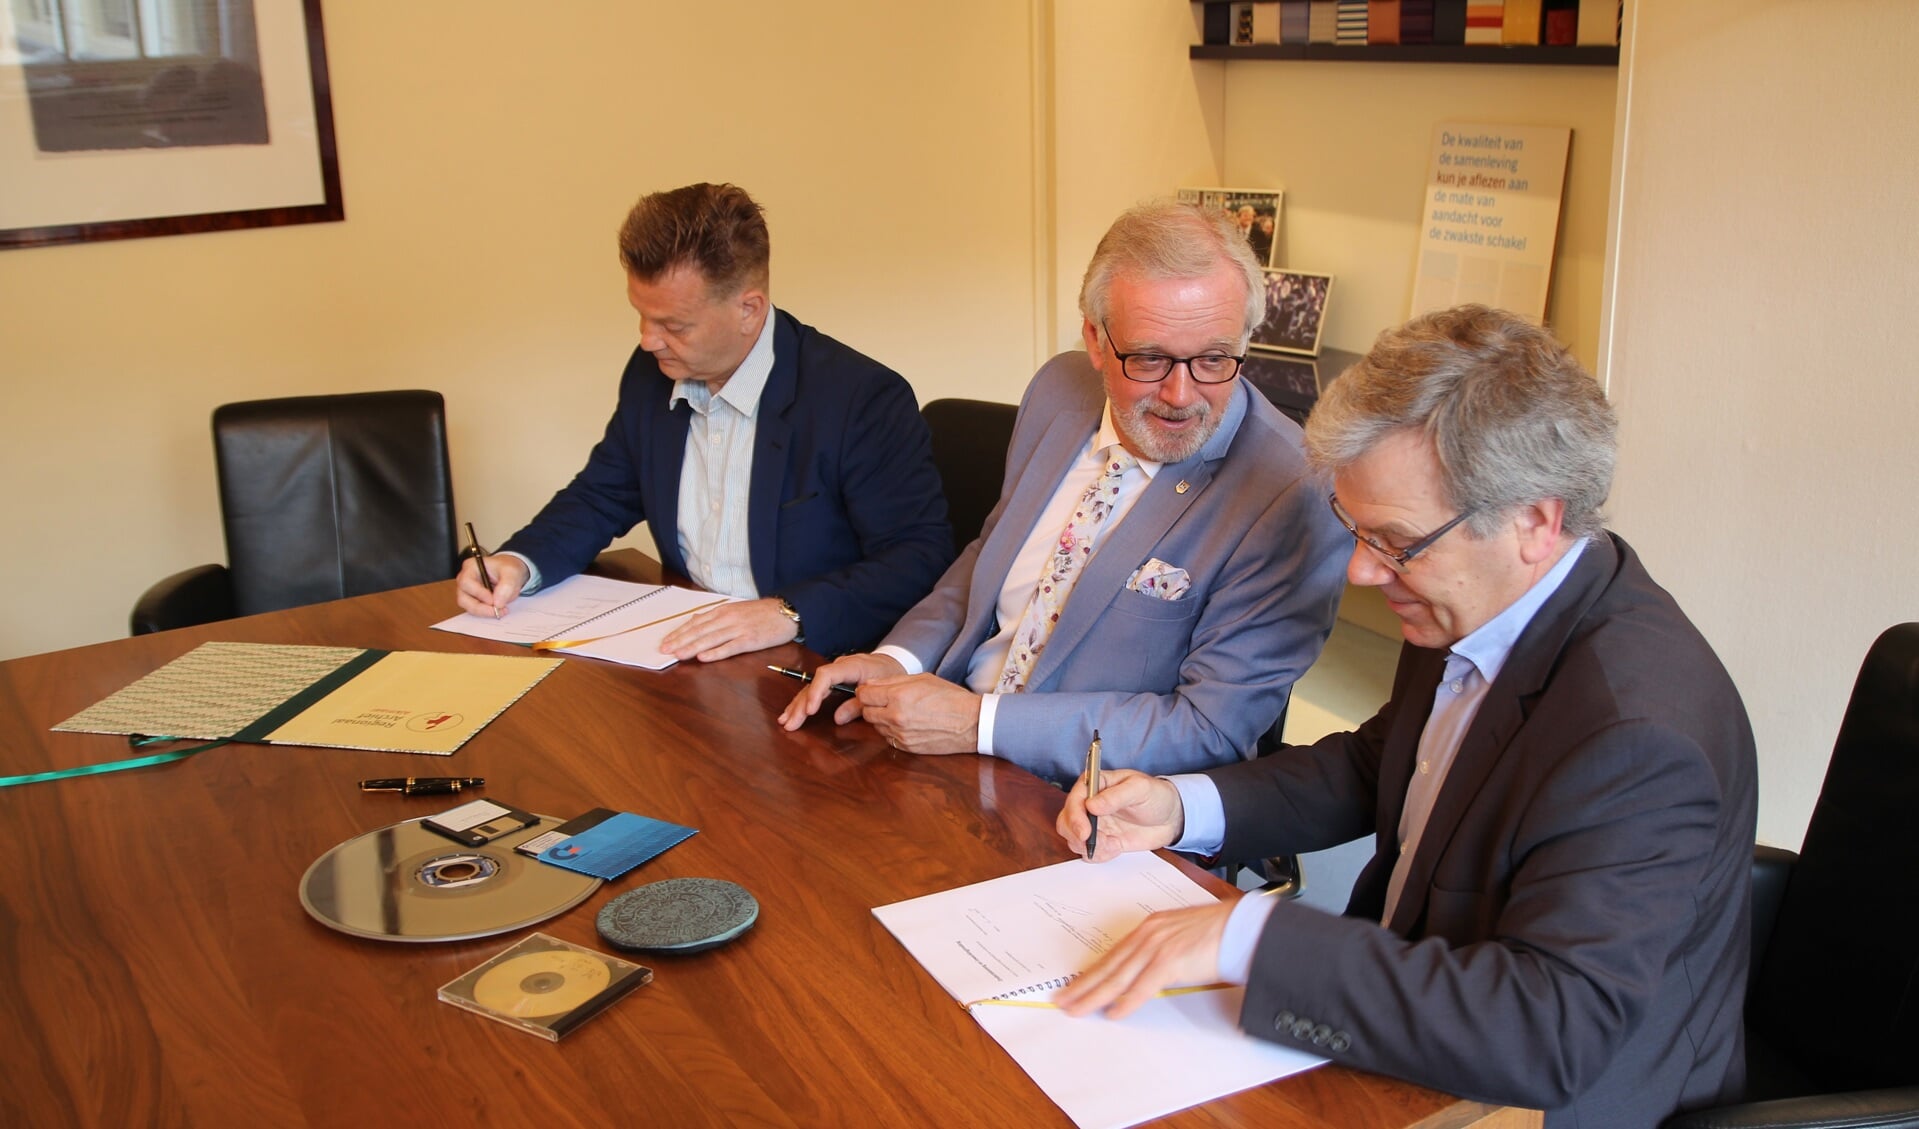 Mark Lindeman (Picturae), Alkmaarse burgemeester Bruinooge (Alkmaar) en Paul Post (Regionaal Archief) ondertekenden de overeenkomst met softwareaanbieder Picturae. Op tafel verschillende informatiedragers. Foto Regionaal Archief Alkmaar. 